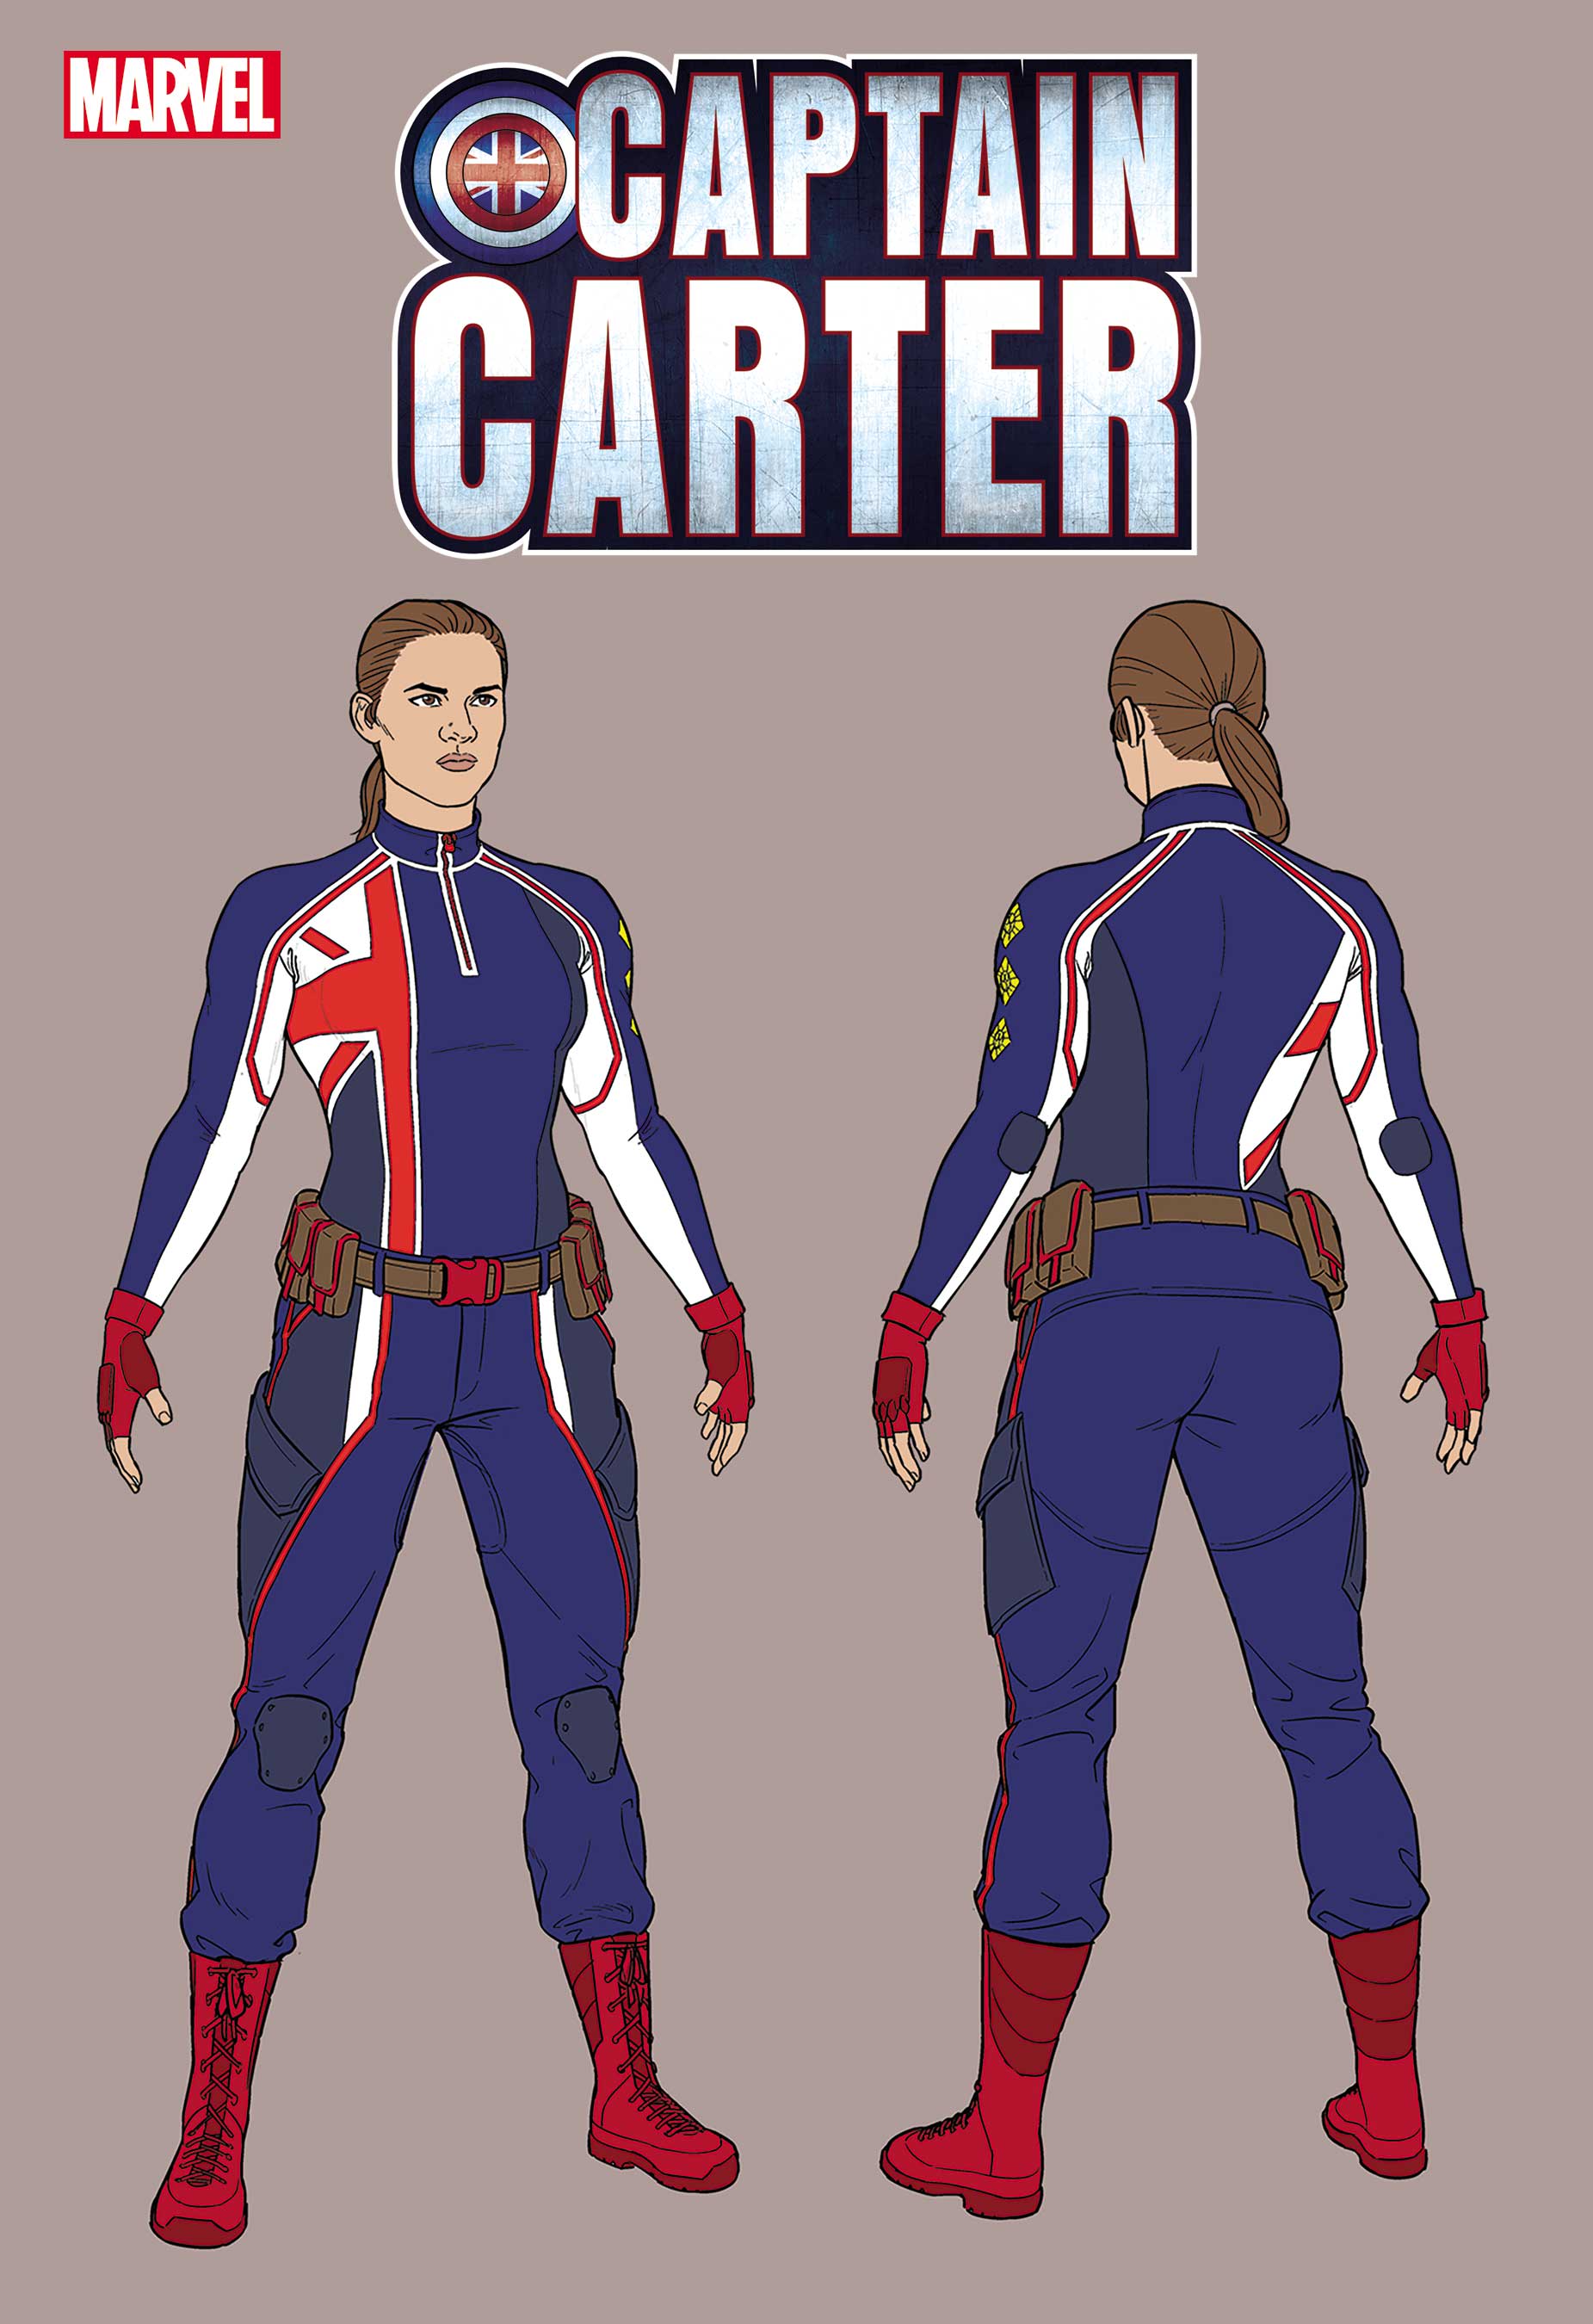 Carter Cruise 2022